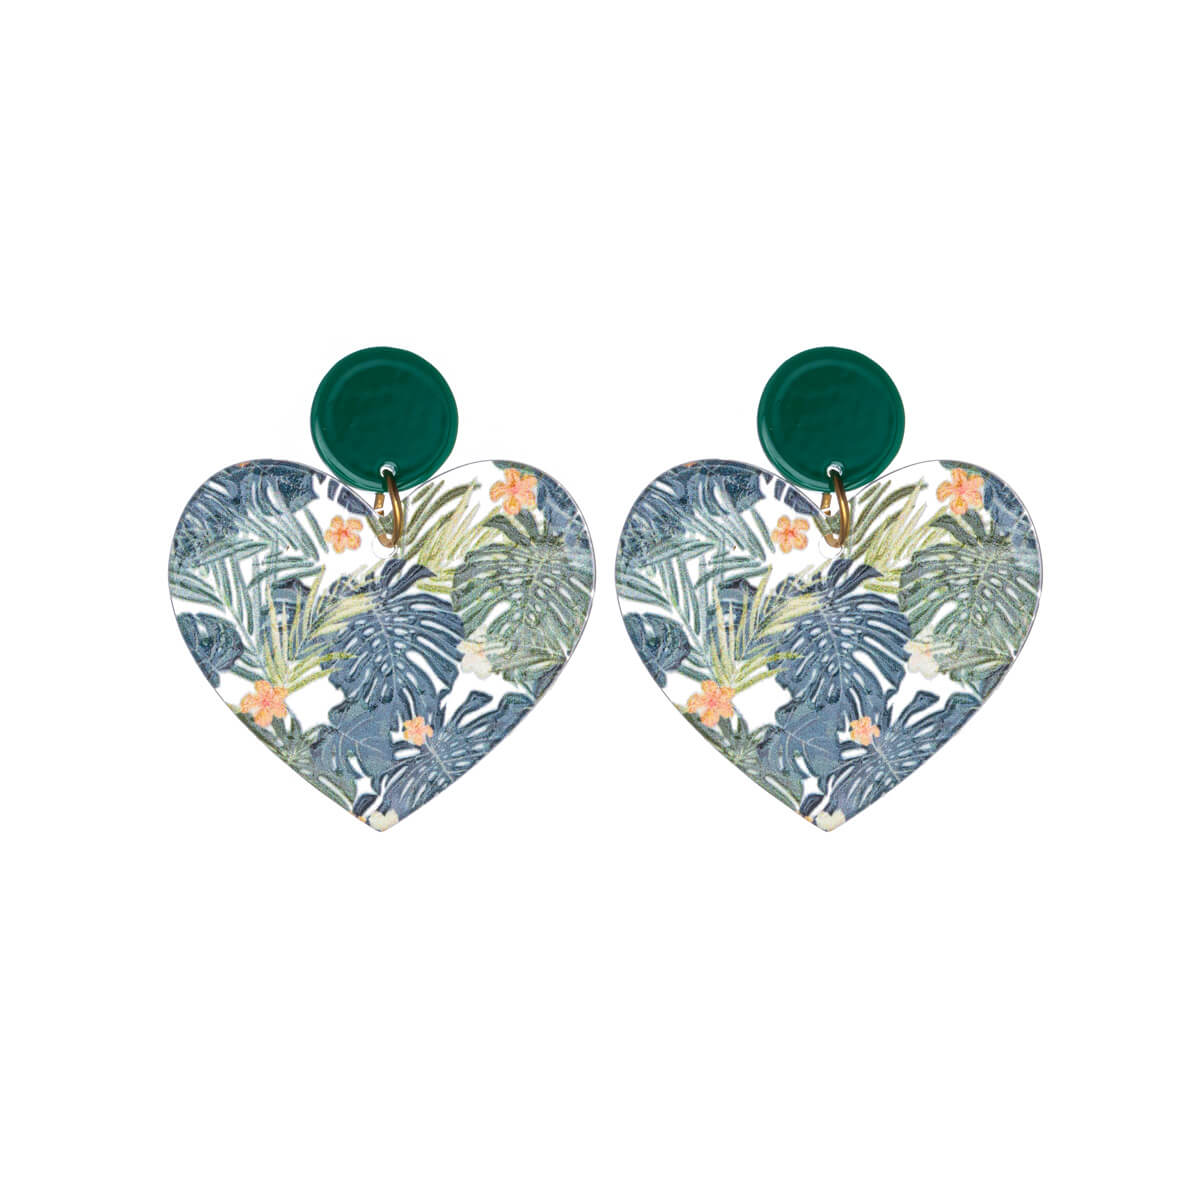 Flower heart earrings